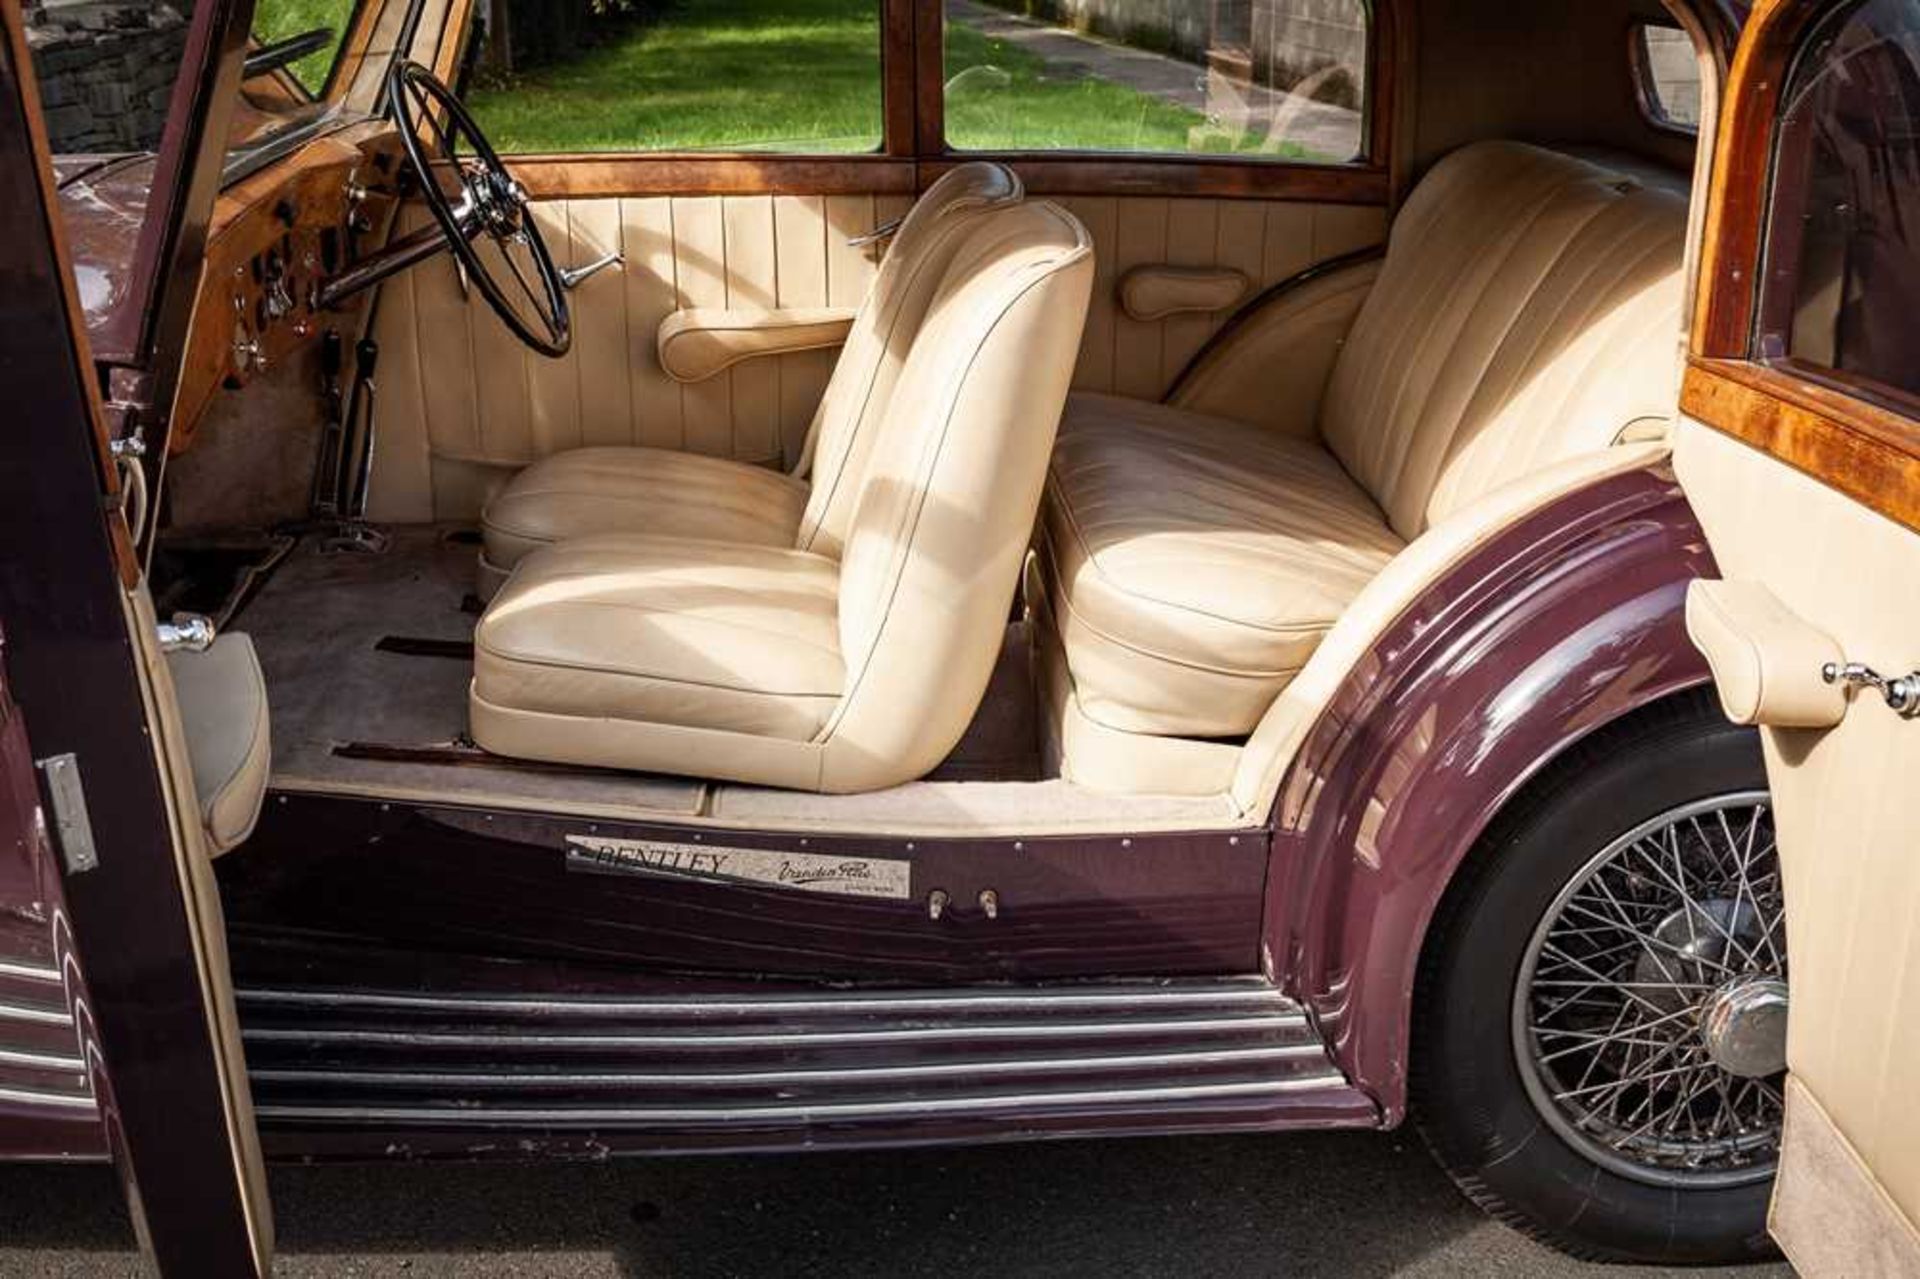 1937 Bentley 4.25 Litre Pillarless Sports Saloon Coachwork by Vanden Plas - Image 27 of 62